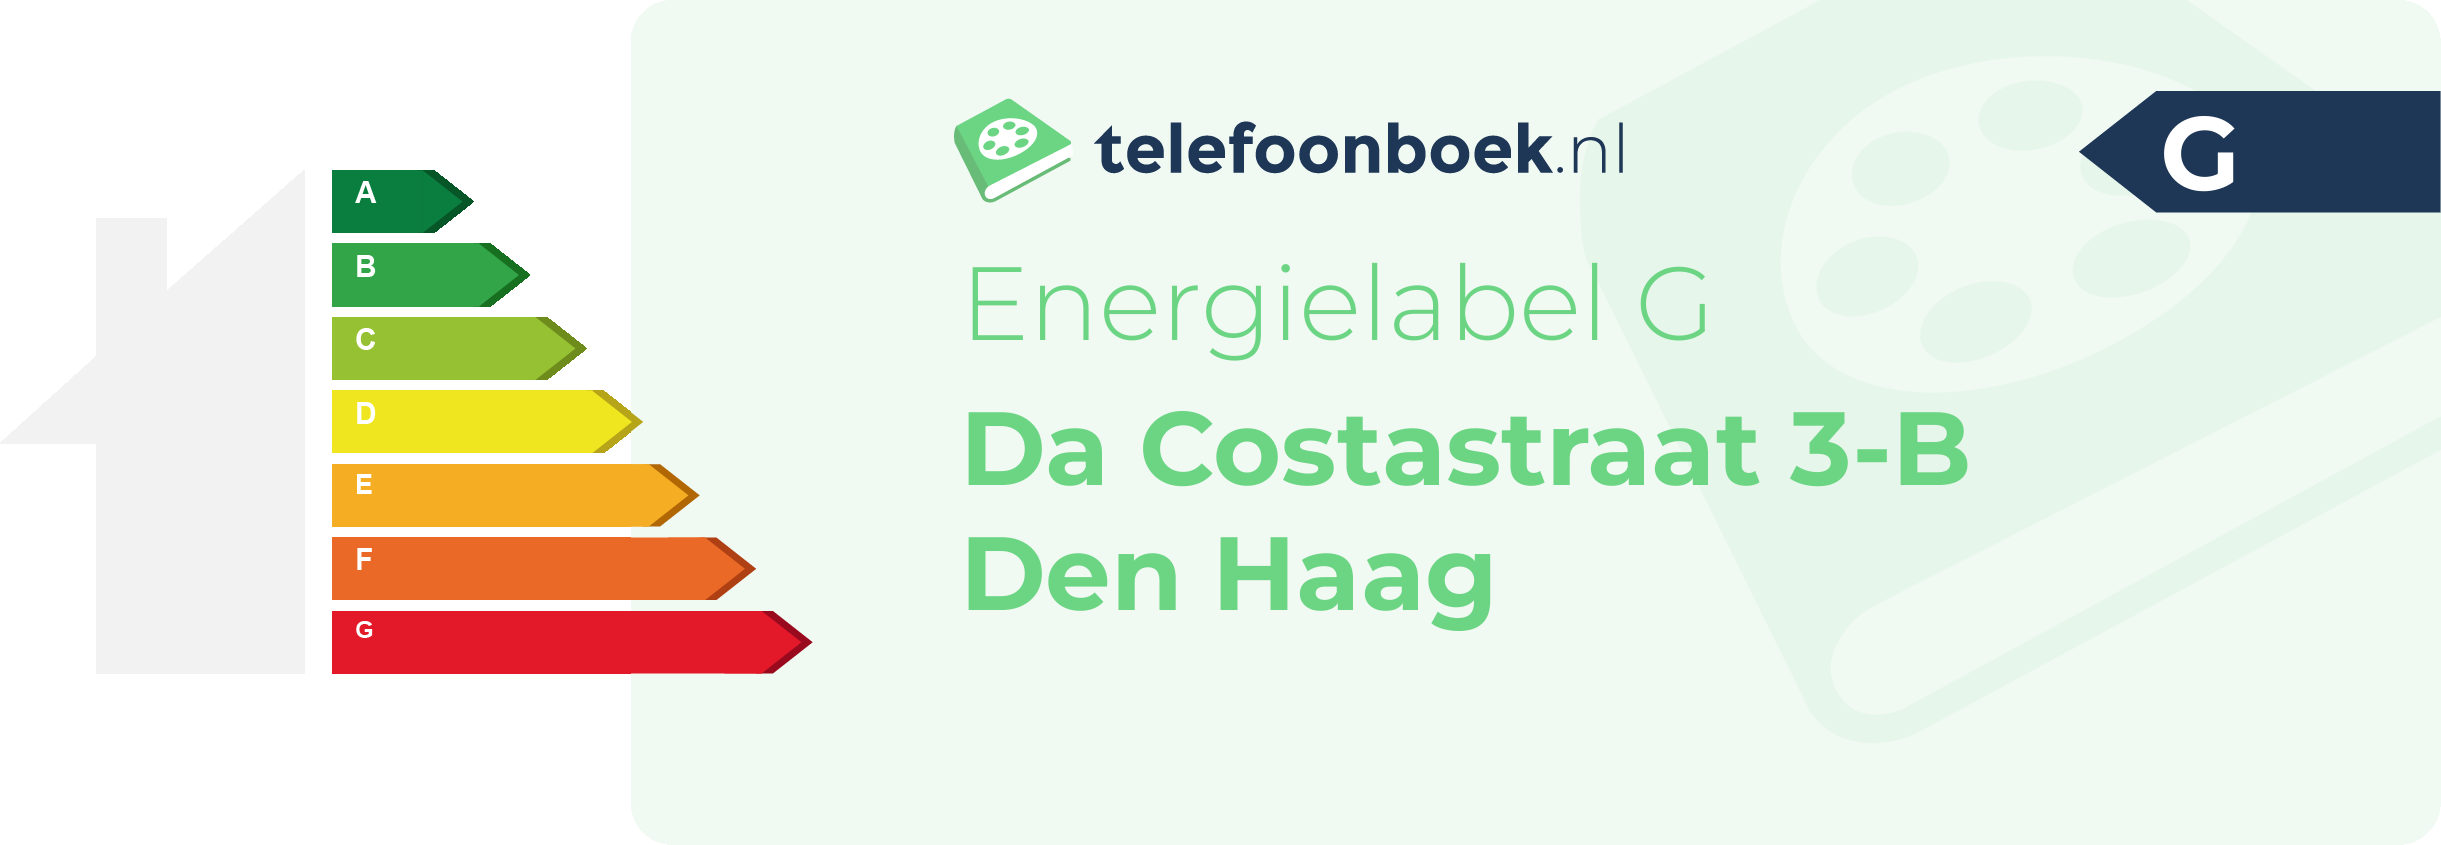 Energielabel Da Costastraat 3-B Den Haag